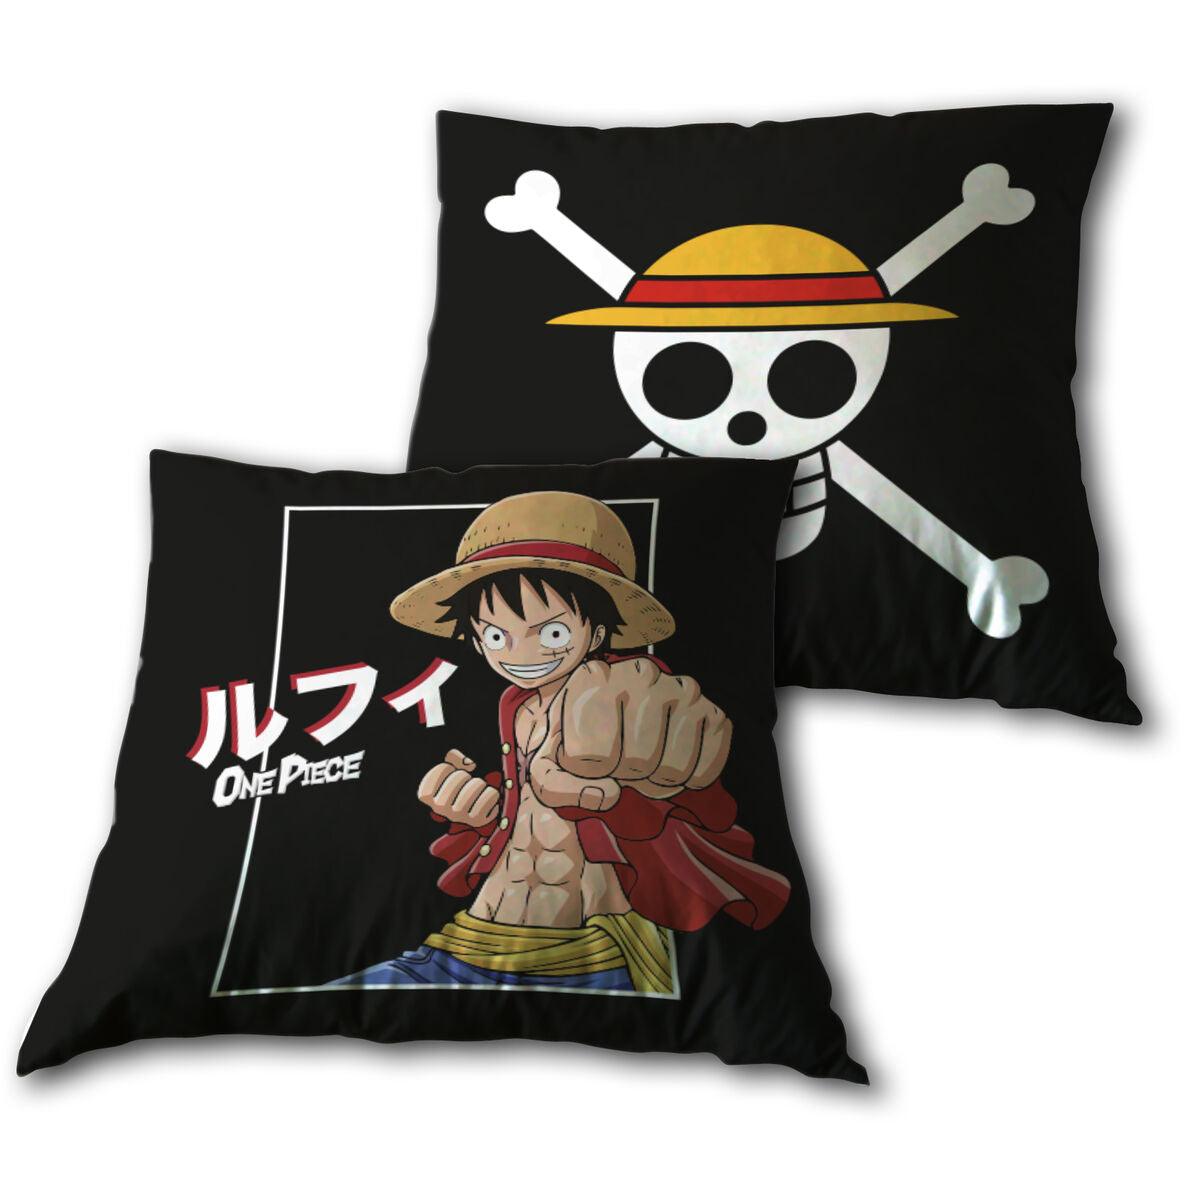 One Piece Monkey D. Luffy Black cushion 35x35cm - TOEI Animation - Ginga Toys